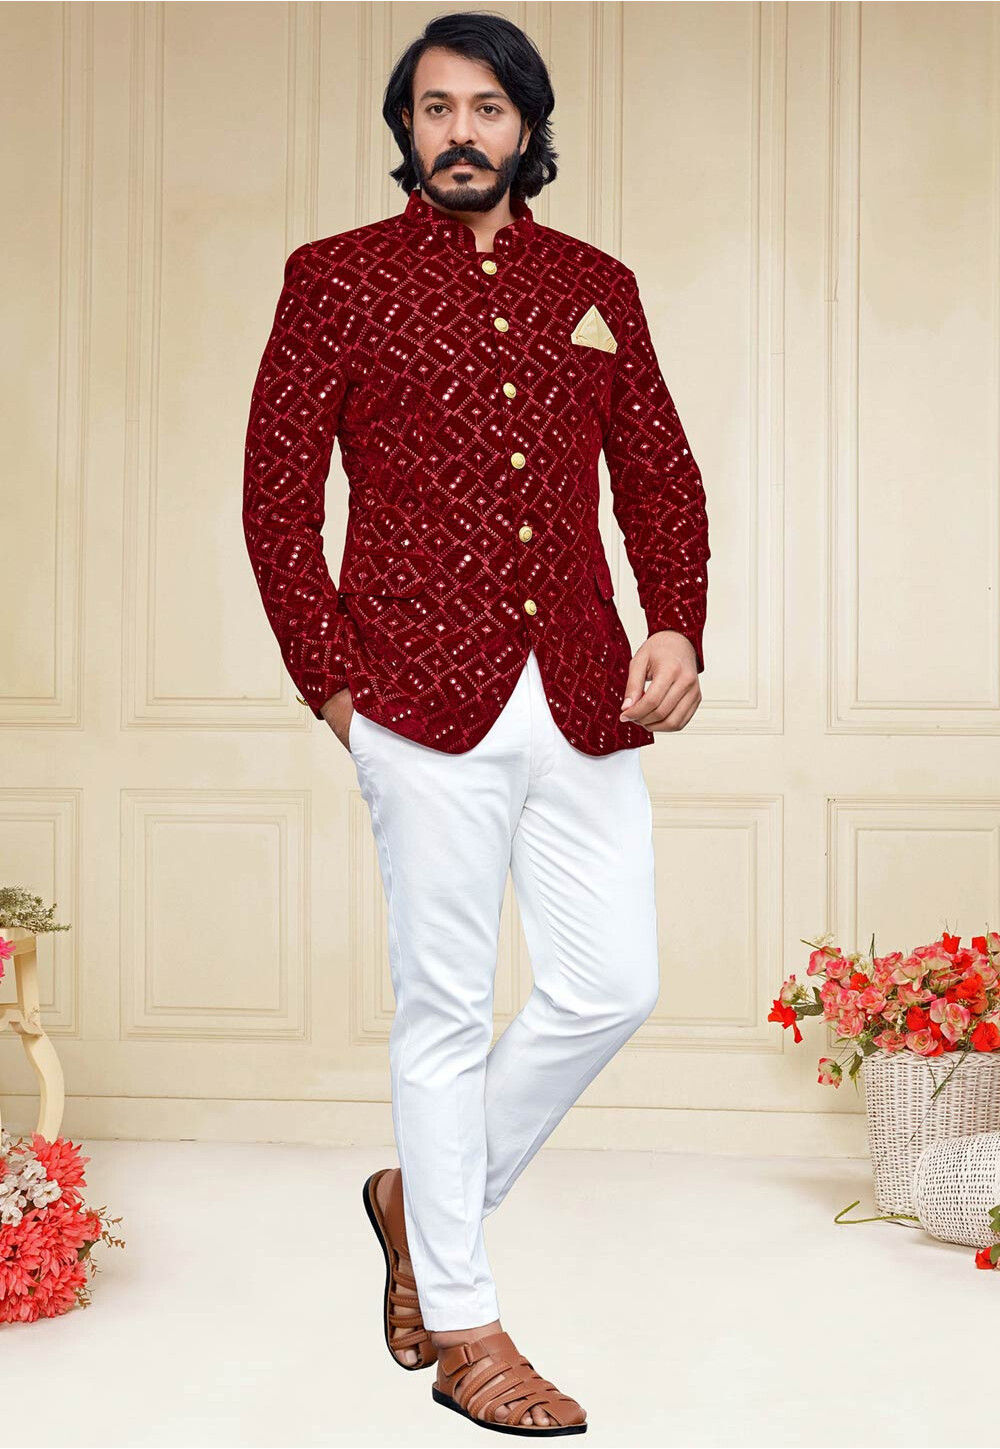 Buy Designer Jodhpur Breeches Pants  Best Designer Trousers for Men   Rohit Kamra  Rohit Kamra Jaipur